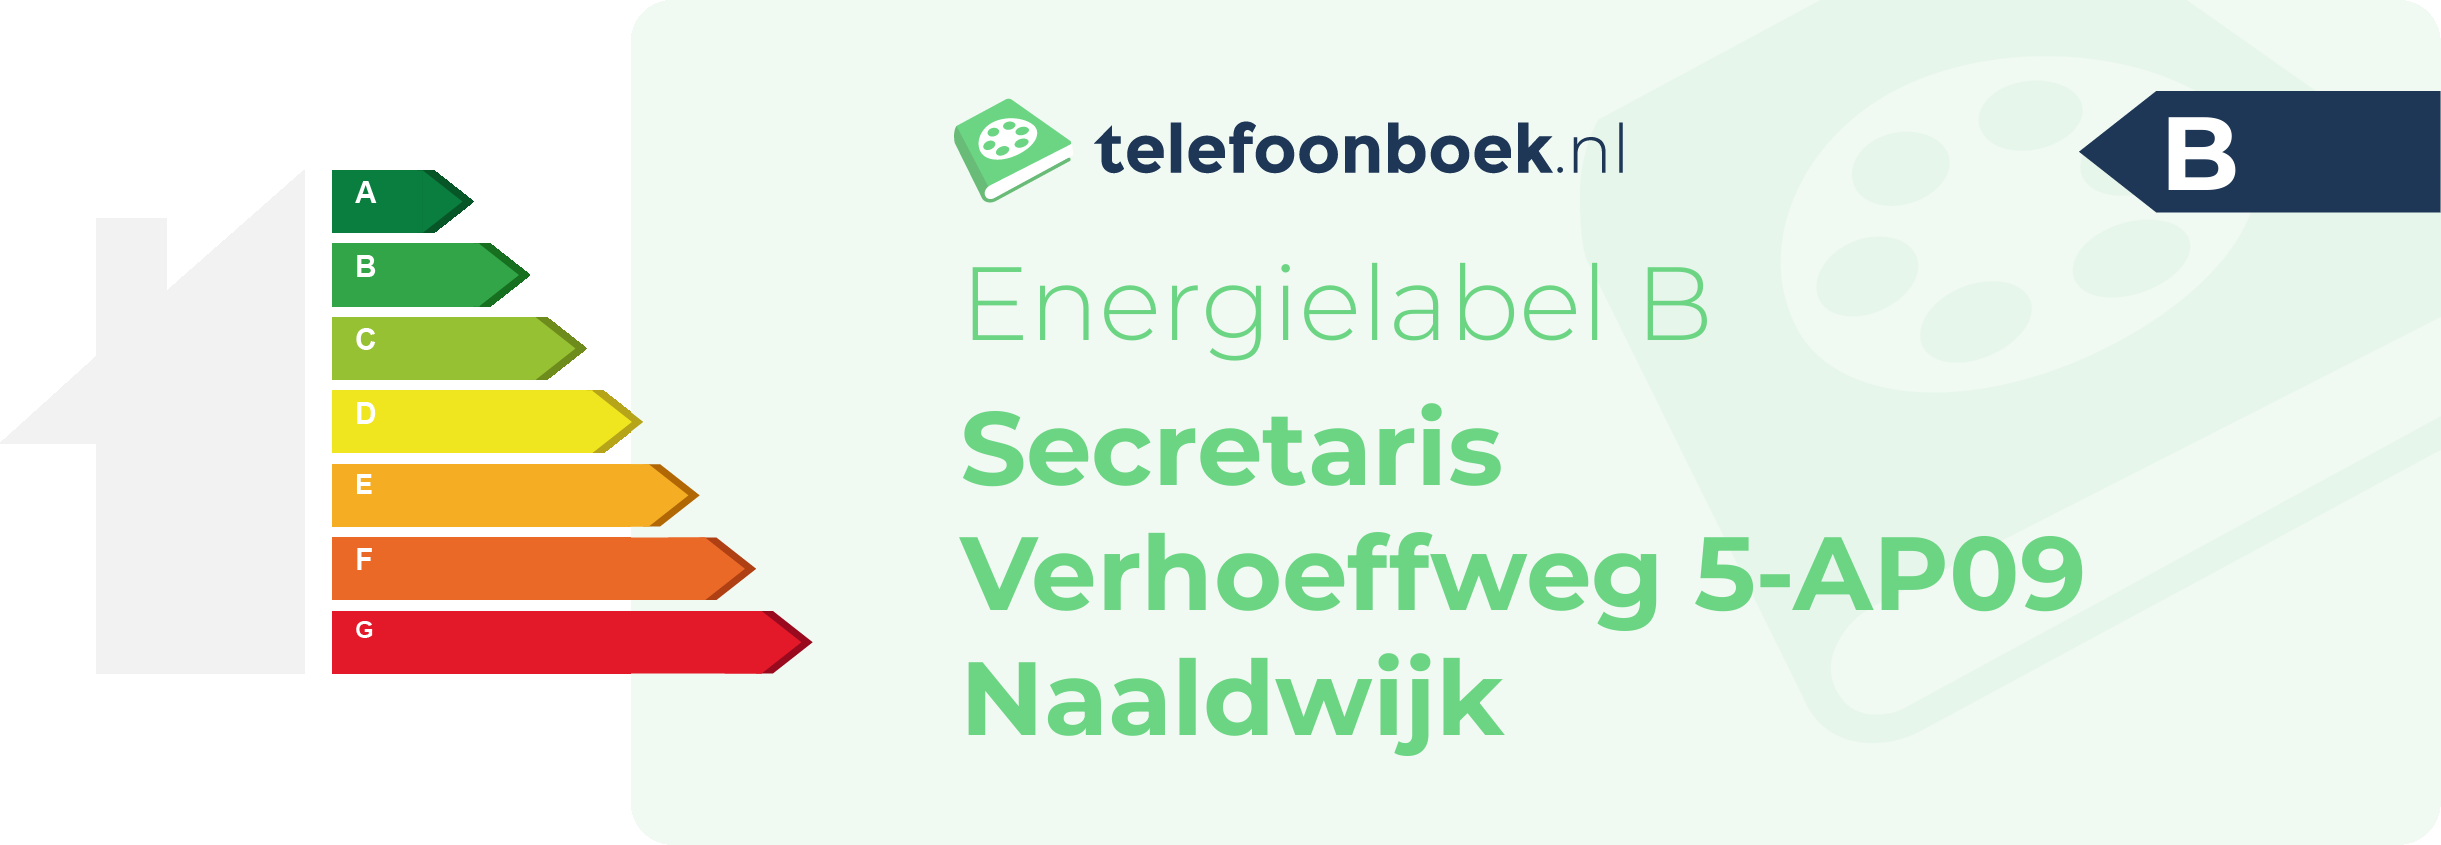 Energielabel Secretaris Verhoeffweg 5-AP09 Naaldwijk